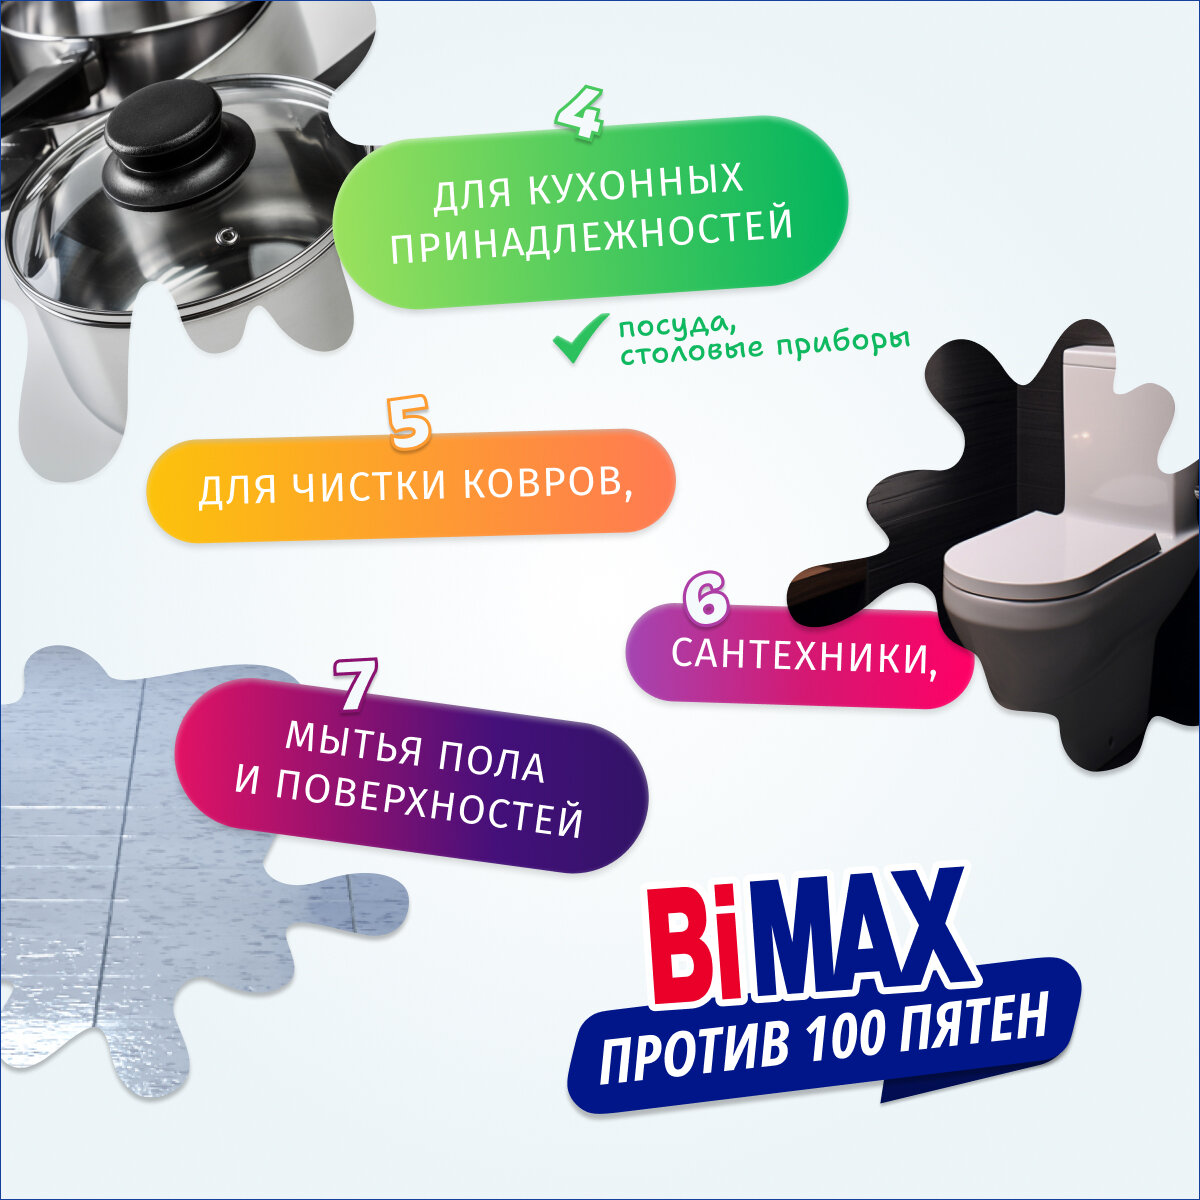 Кислородный пятновыводитель BiMAX, универсальный очиститель, 1 кг